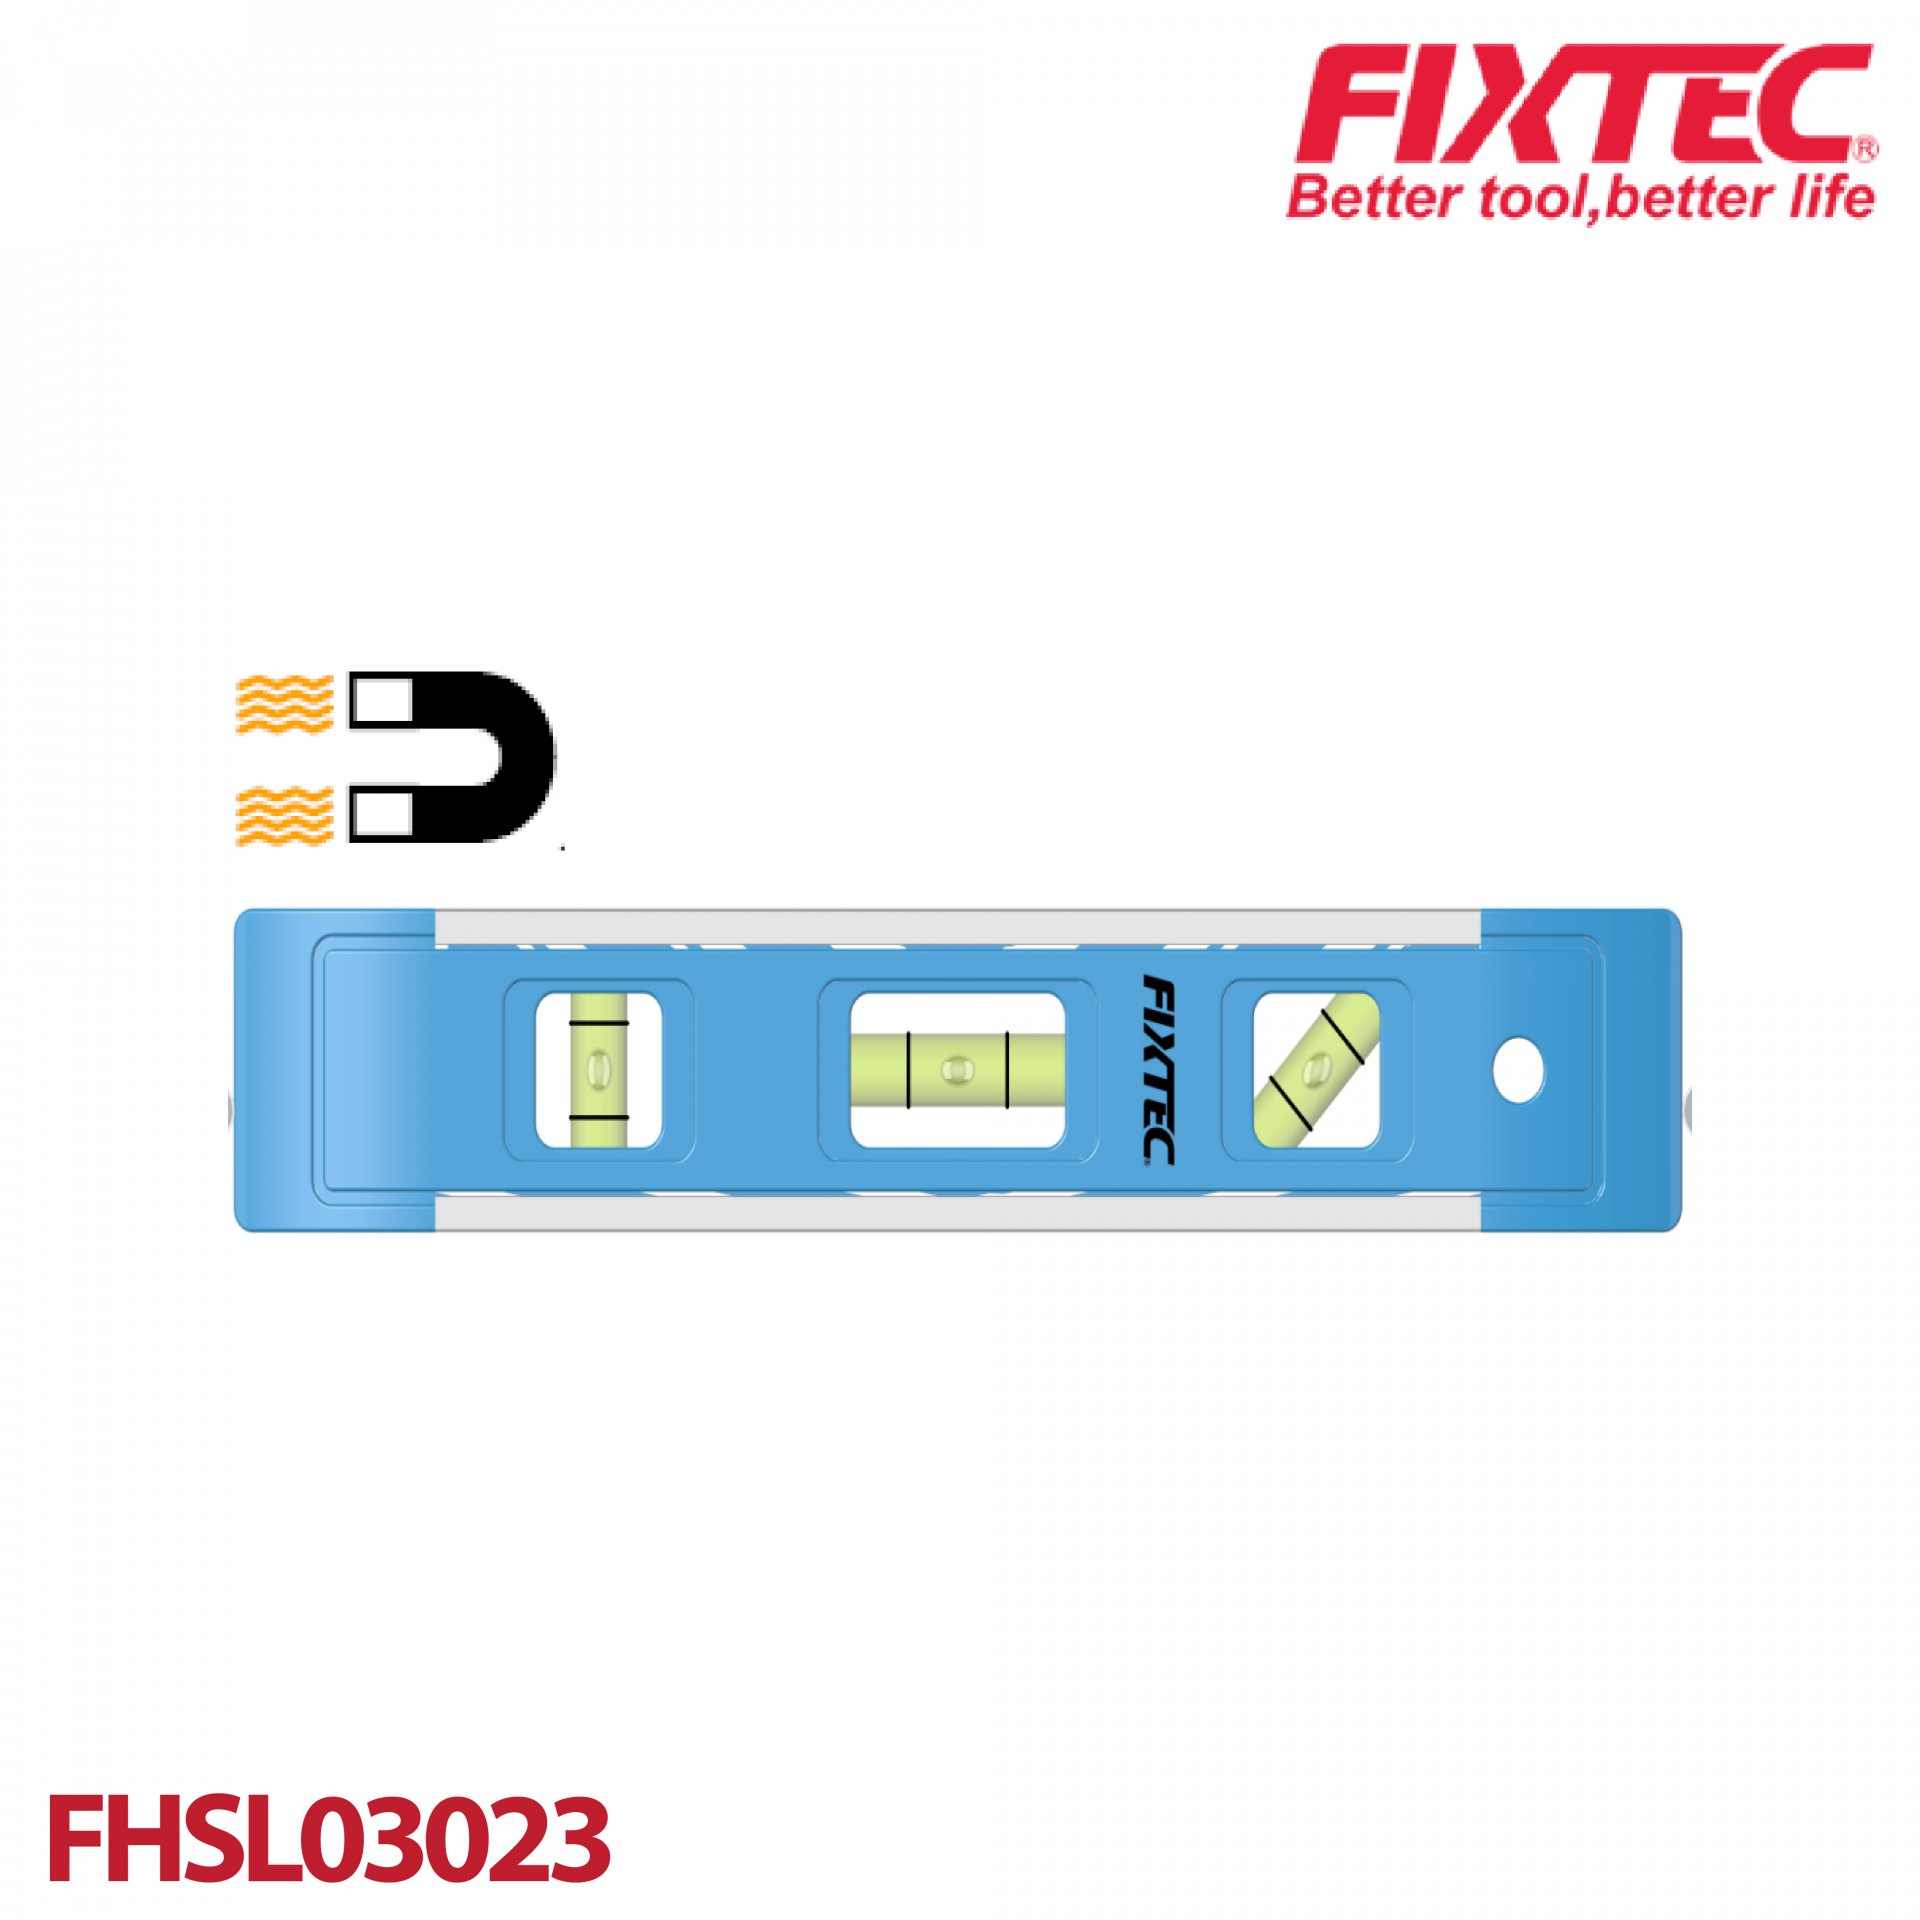 ระดับน้ำแม่เหล็กตอร์ปิโด FIXTEC FHSL03023